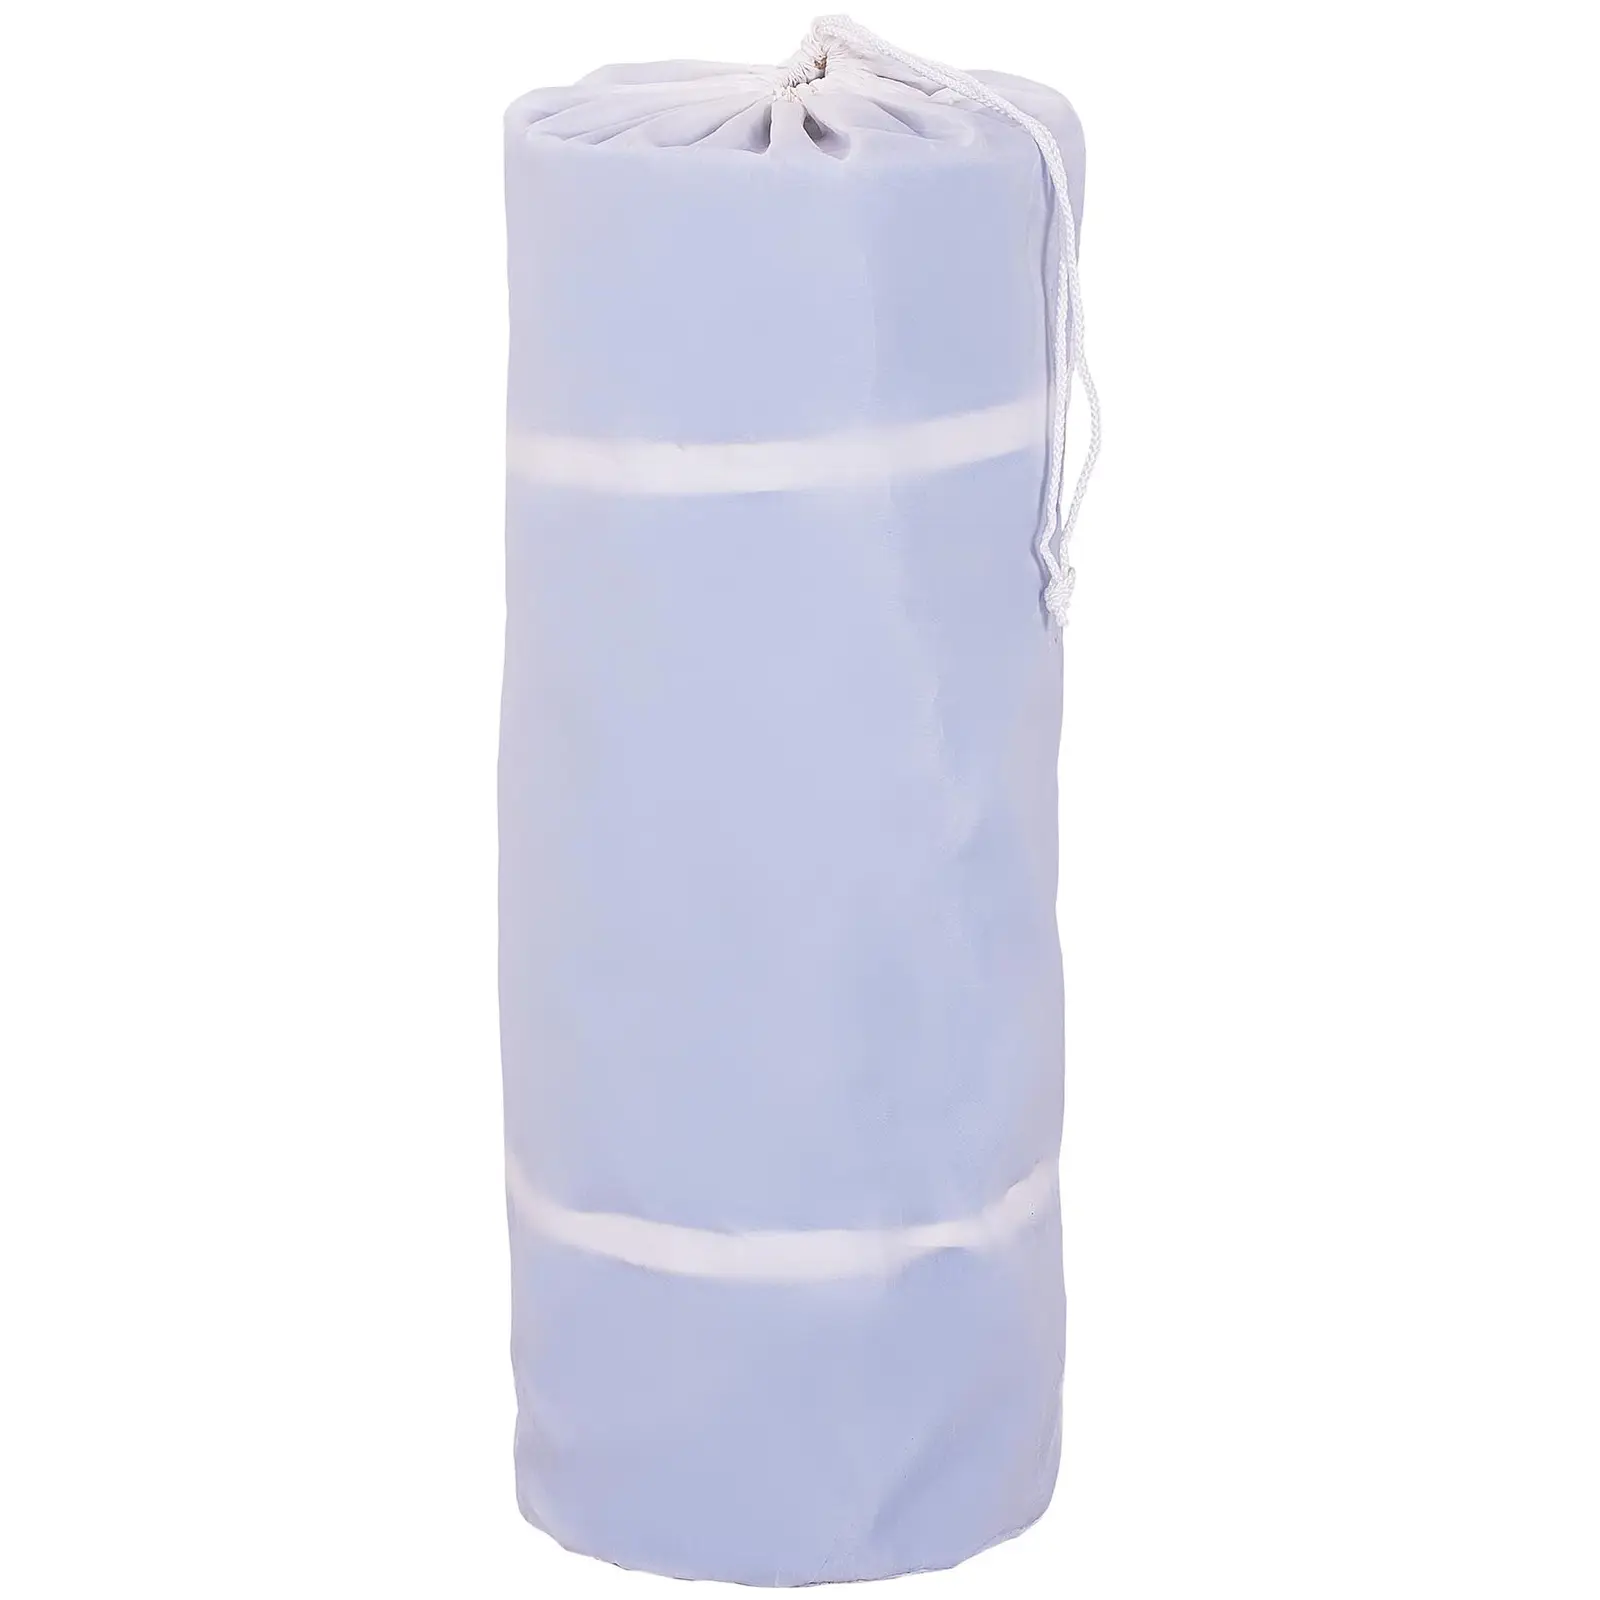 Nafukovacia žinenka - 500 x 100 x 20 cm - 250 kg - modrá/biela